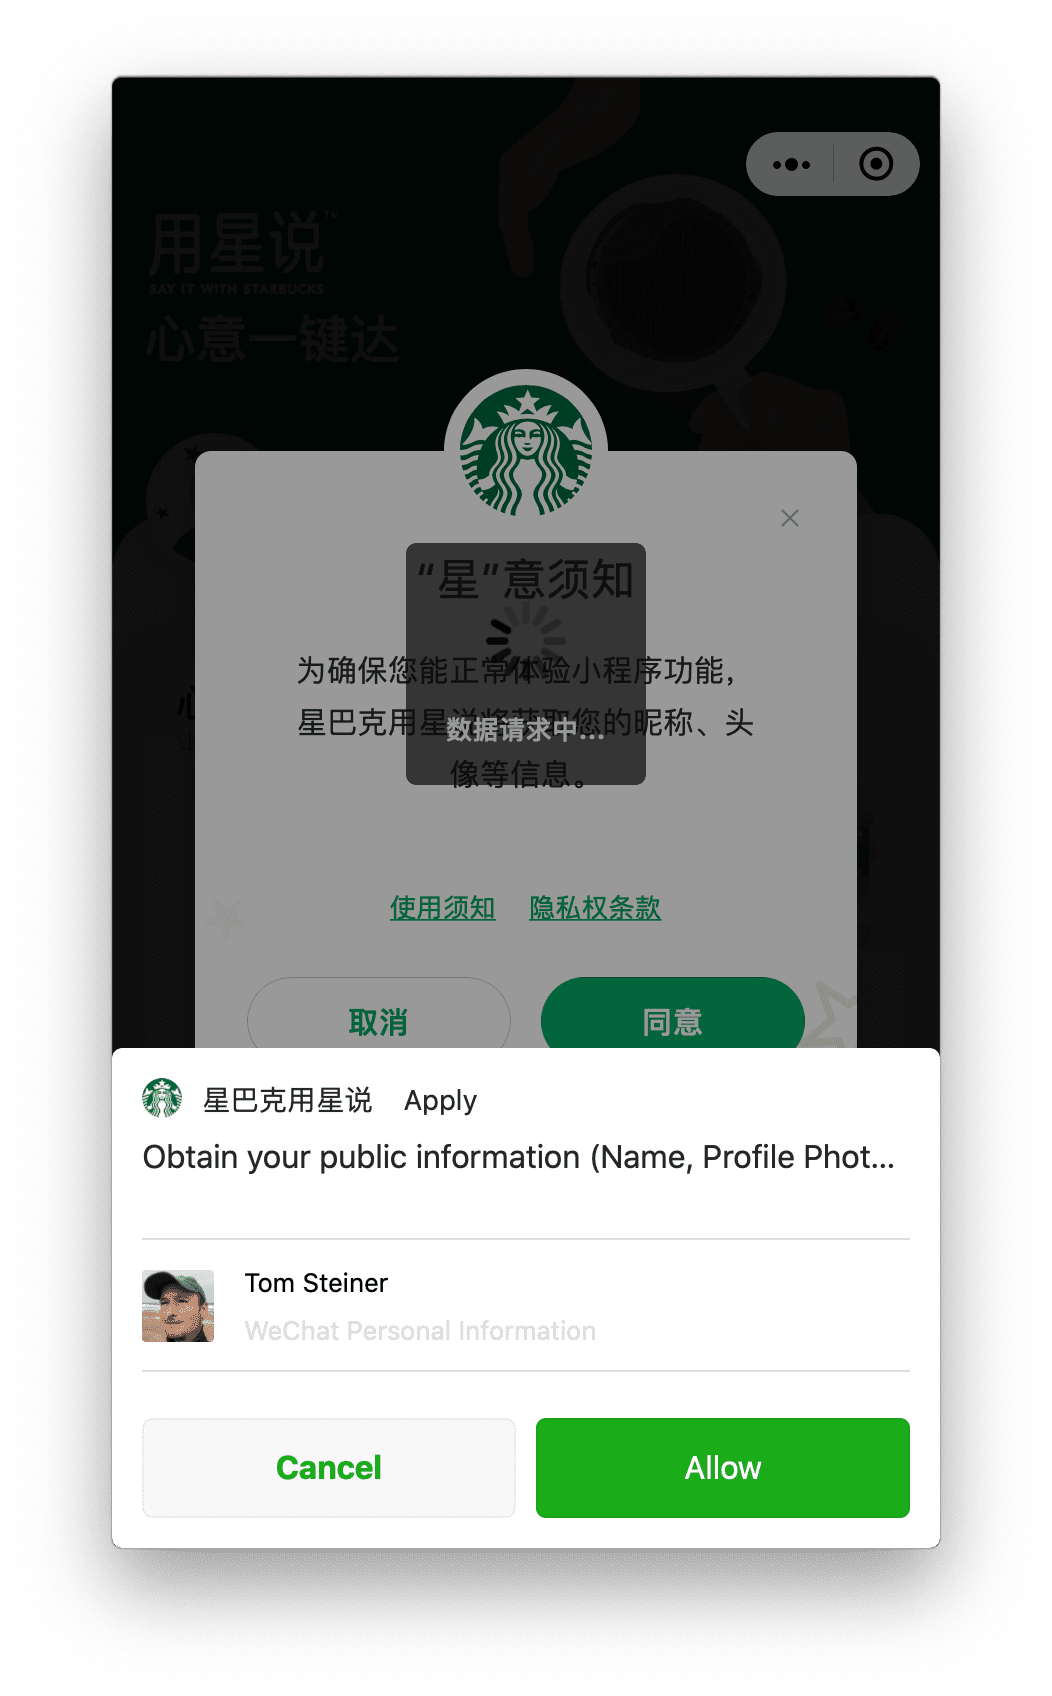 La miniapp de Starbucks que se ejecuta en macOS solicita el permiso de perfil del usuario que este puede otorgar mediante un mensaje que se muestra en la parte inferior.